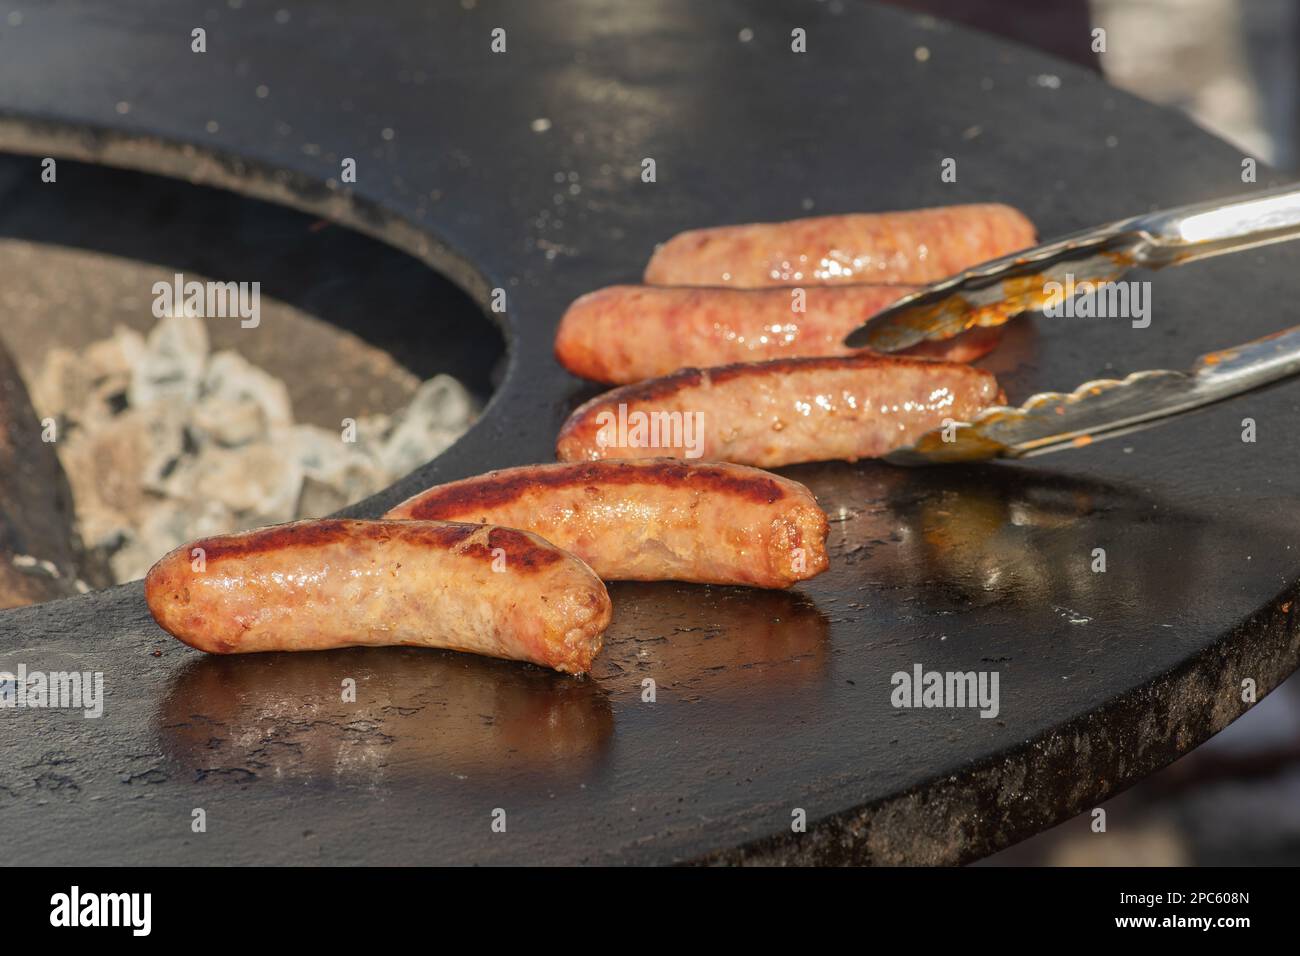 Salsicce di maiale pronte da mangiare, grigliate o arrostite in un barbecue su un fuoco aperto e fiamme, in un mercato di cibo di strada o un picnic all'aperto, primo piano Foto Stock